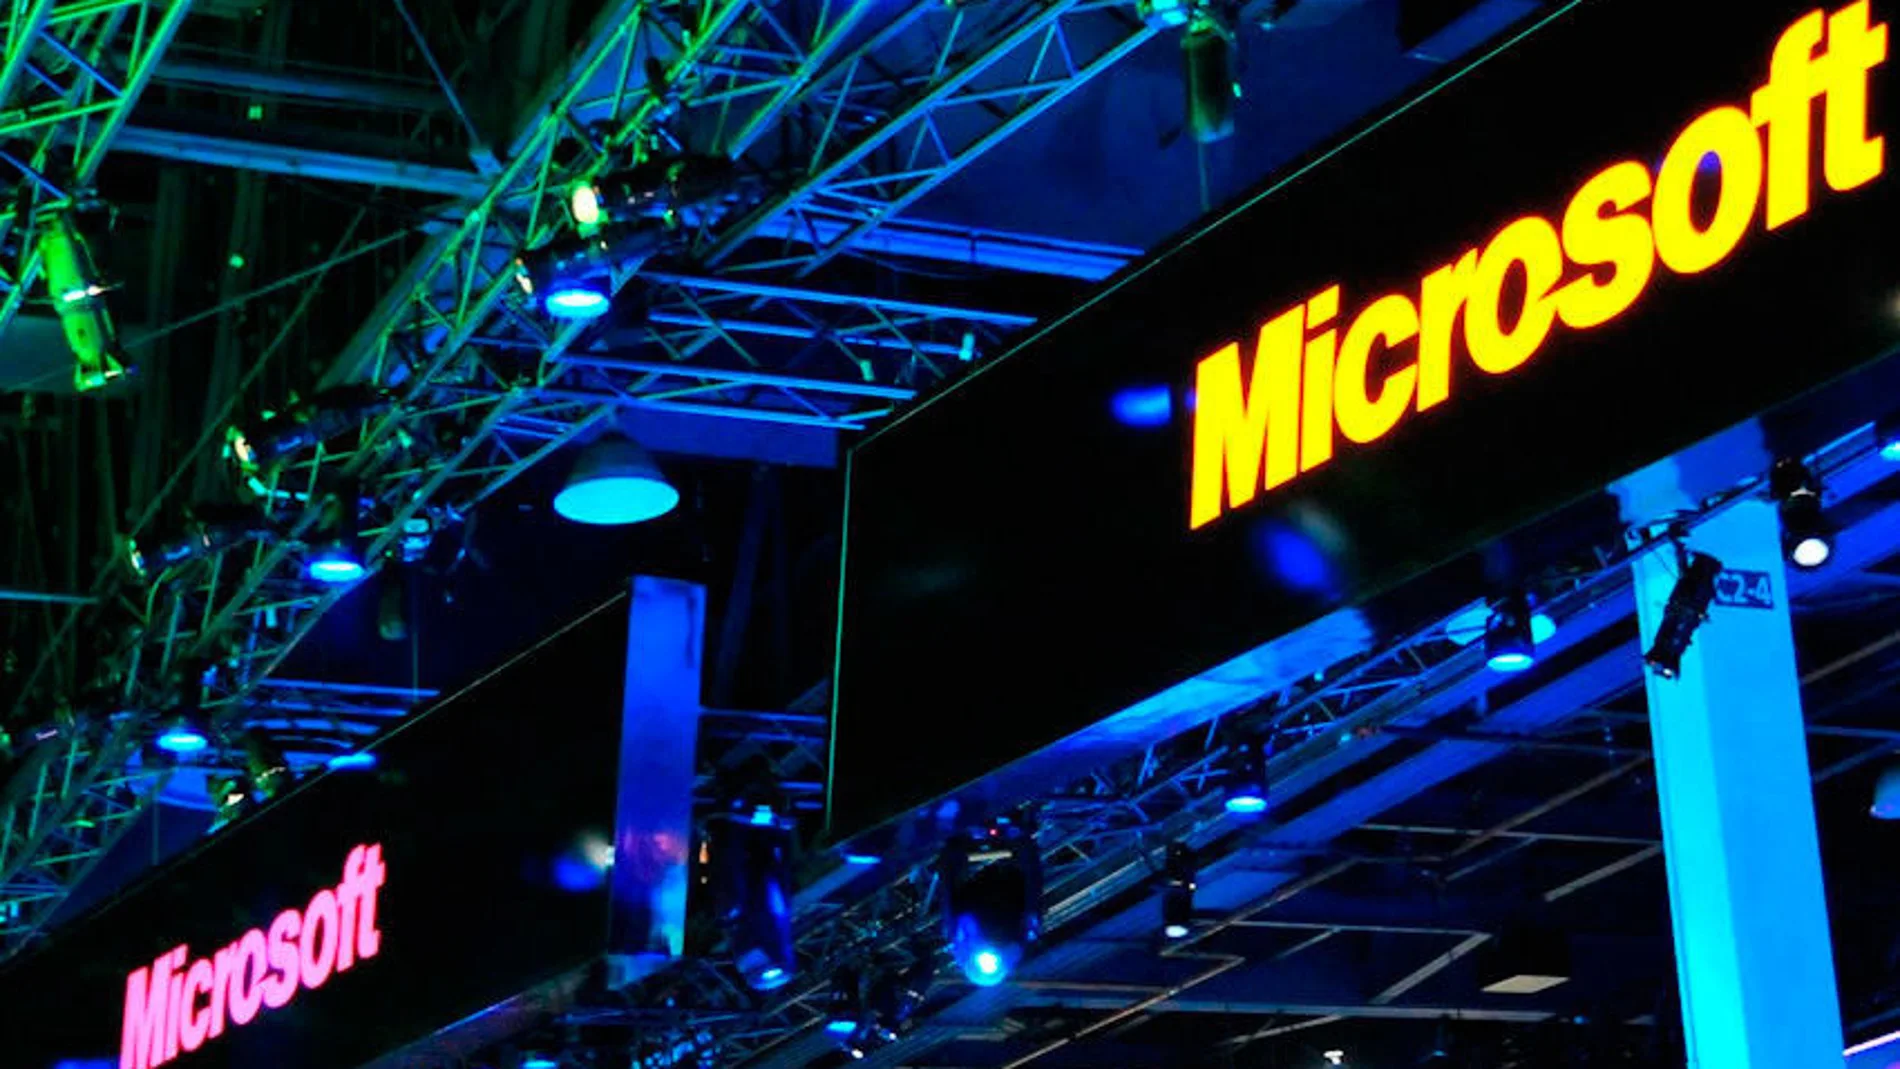 Microsoft desvela sus novedades en videojuegos para los próximos meses